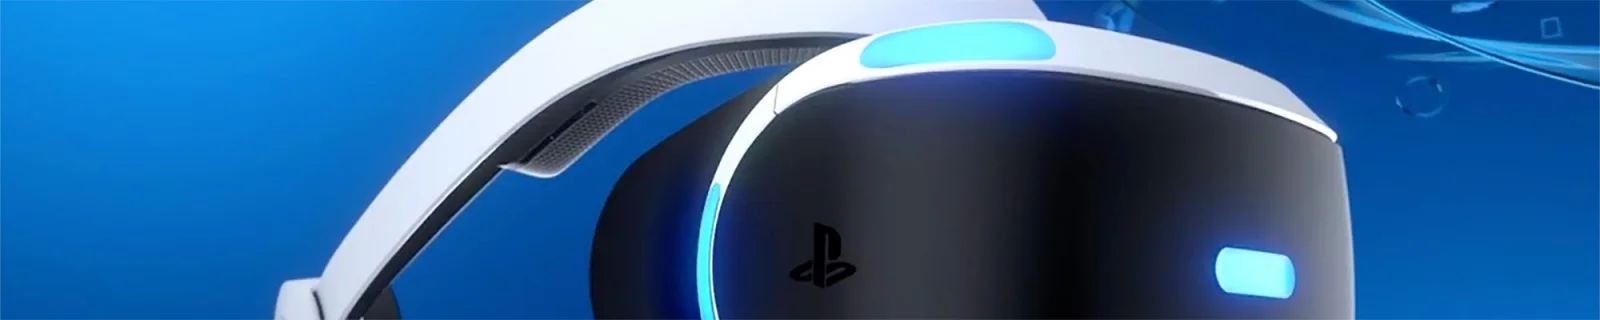 索尼3月15日召开PS VR发布会或公布售价